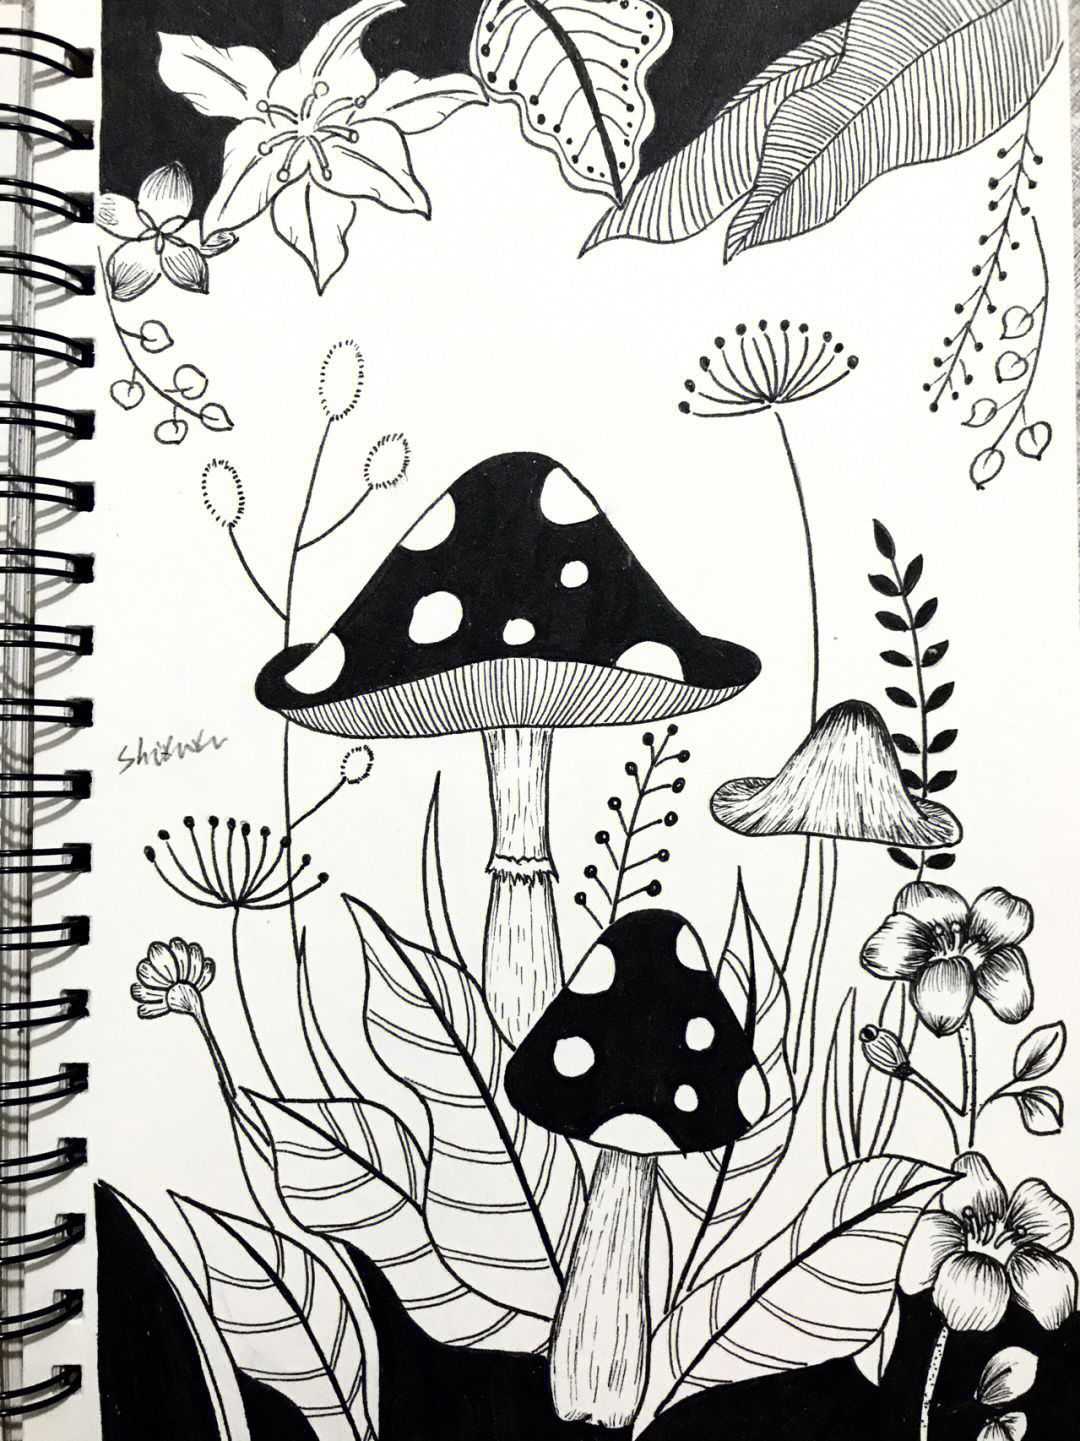 针管笔画黑白线描花卉蘑菇手绘018